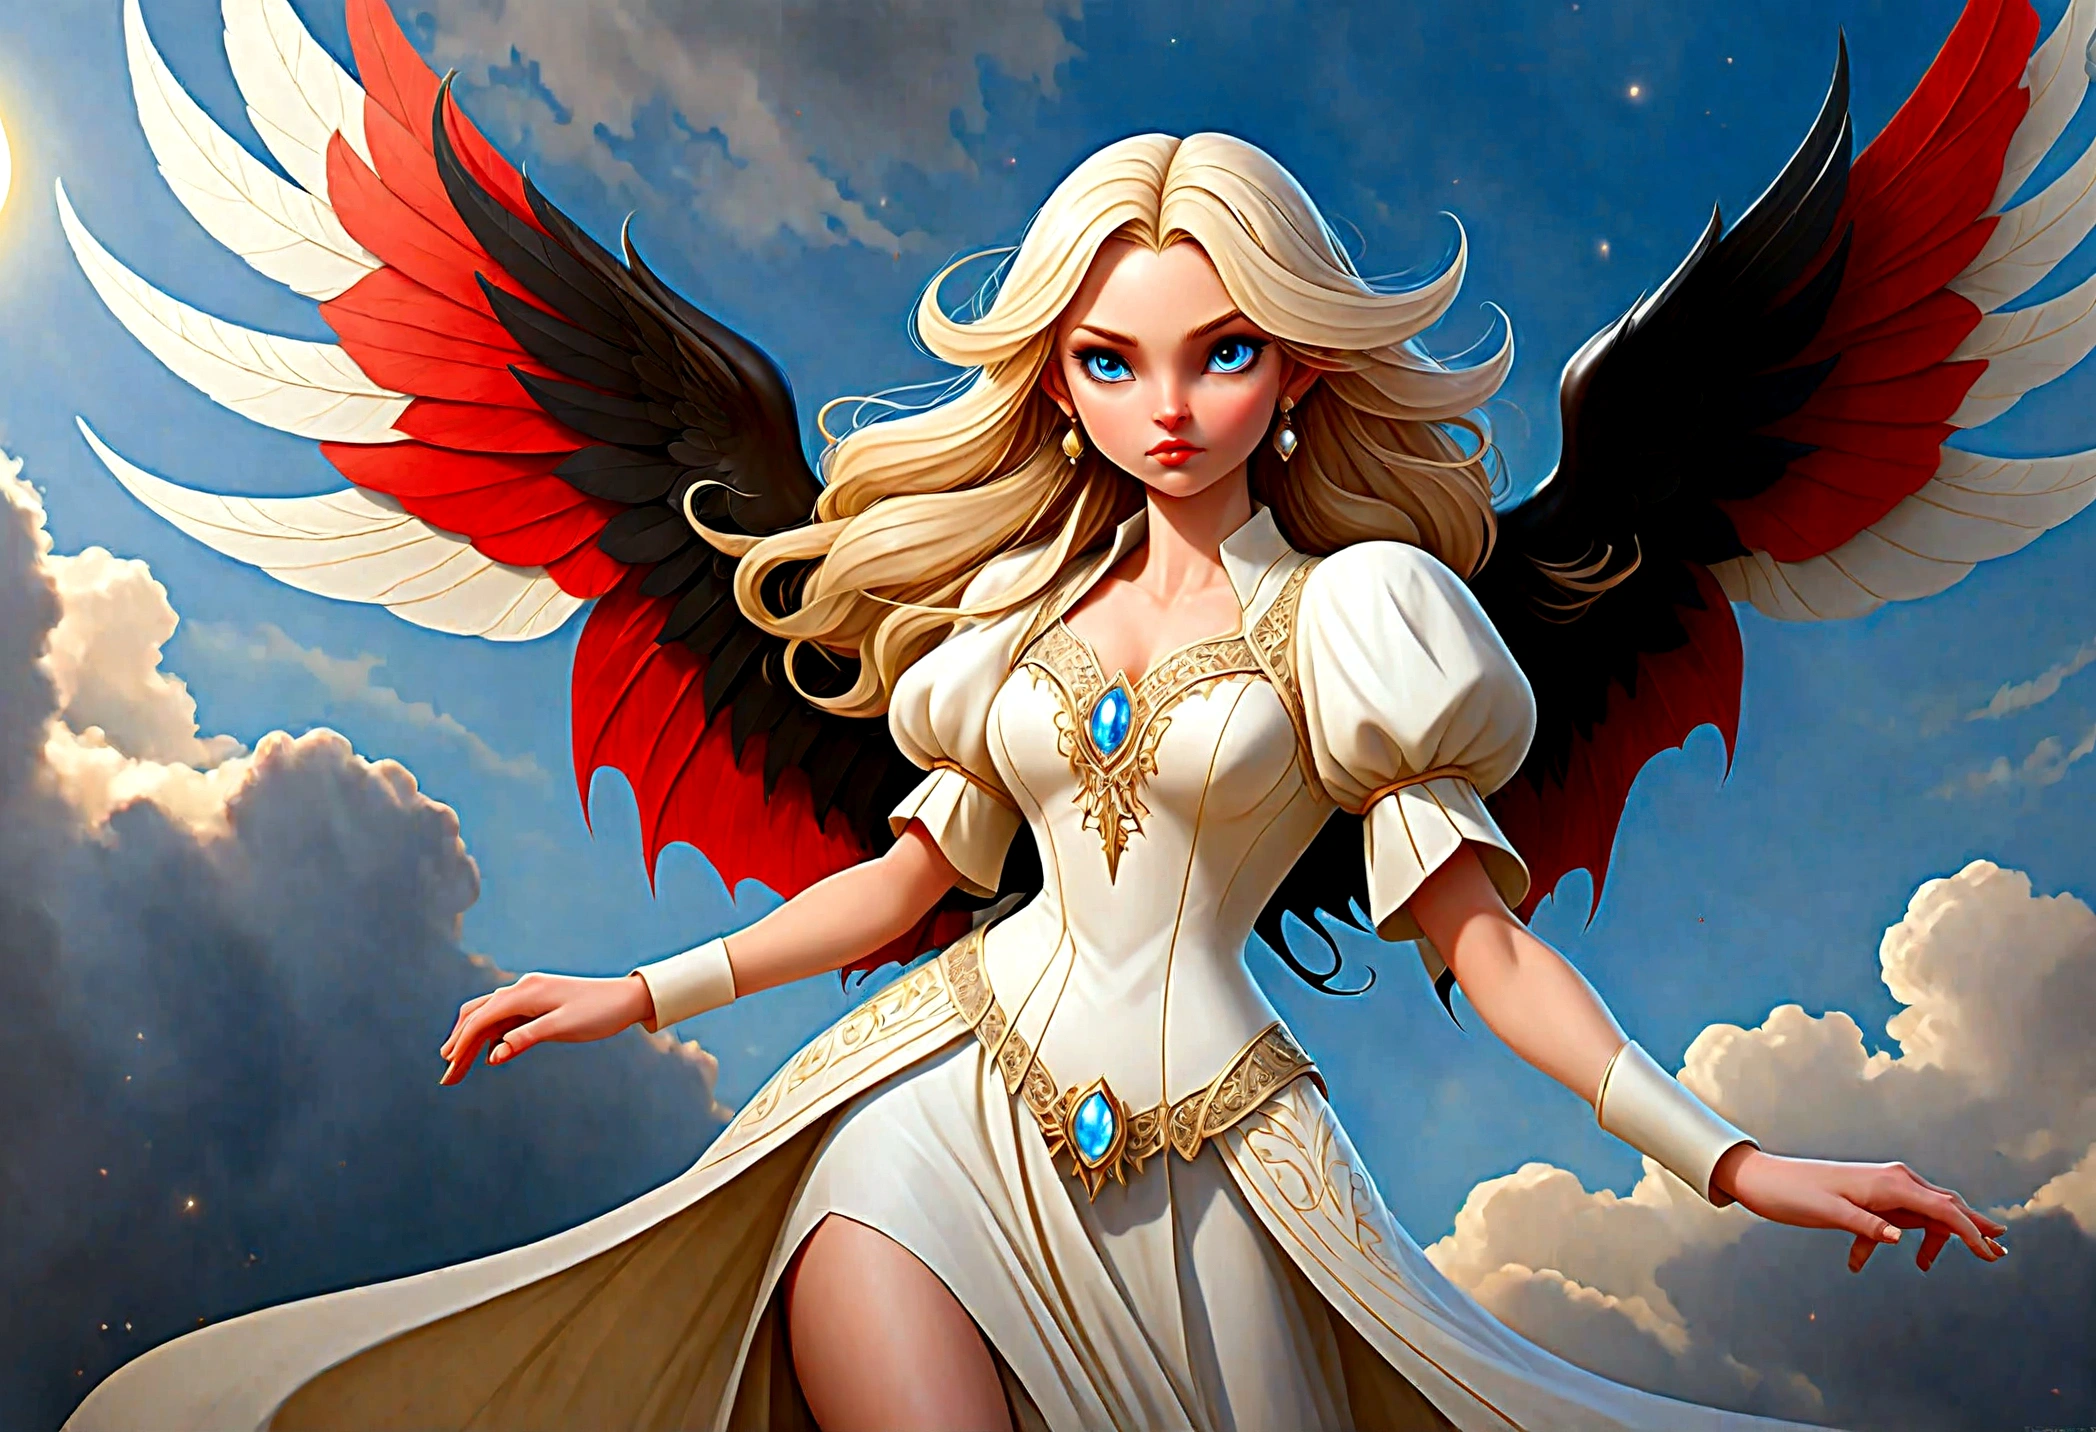 arte de fantasia, Arte RPG [[uma foto de 2 mulheres]], solteira1 anjo feminino, usando vestido branco, pele pálida, rosto bonito, cabelo loiro, cabelos longos cabelos ondulados, olhos azuis, botas de salto alto, vestindo um vestido (obra de arte, detalhes intrincados: 1.5), grandes asas angelicais, asas angelicais brancas abertas [e] um único demônio feminino, pele vermelha  demonic wings, asas demoníacas negras se espalham, chifres demoníacos, pele vermelha, Cabelo preto, olhos vermelhos, rosto bonito, vestindo um vestido (obra de arte, detalhes intrincados: 1.5), salto alto, na fronteira entre o céu e o inferno, lua, Estrelas, Nuvens, raios de deus, silhueta suave da luz natural, Ângulo Dinâmico,  fotorrealismo, vista panorâmica grande angular, Ângulo ultra-amplo, ultra melhor realista, melhores detalhes, 16k, [ultra detalhado], obra de arte, melhor qualidade, (extremamente detalhado), fotorrealismo, profundidade de campo, pintura hiper realista